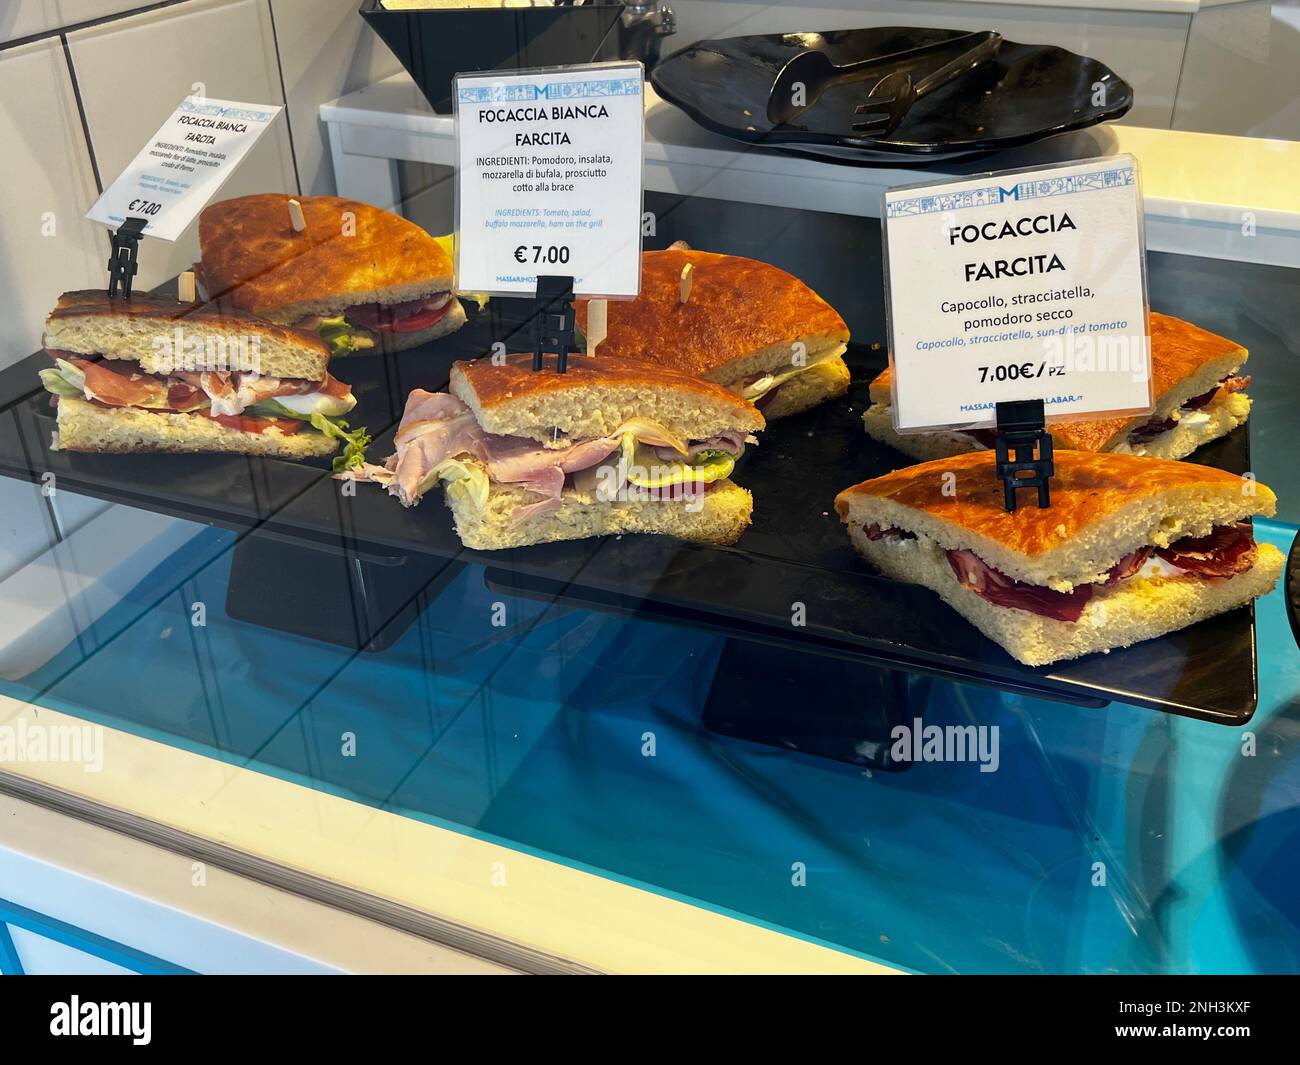 Focaccia sandwiches are displayed at a restaurant in Polignano a Mare, Puglia Italy. Stock Photo